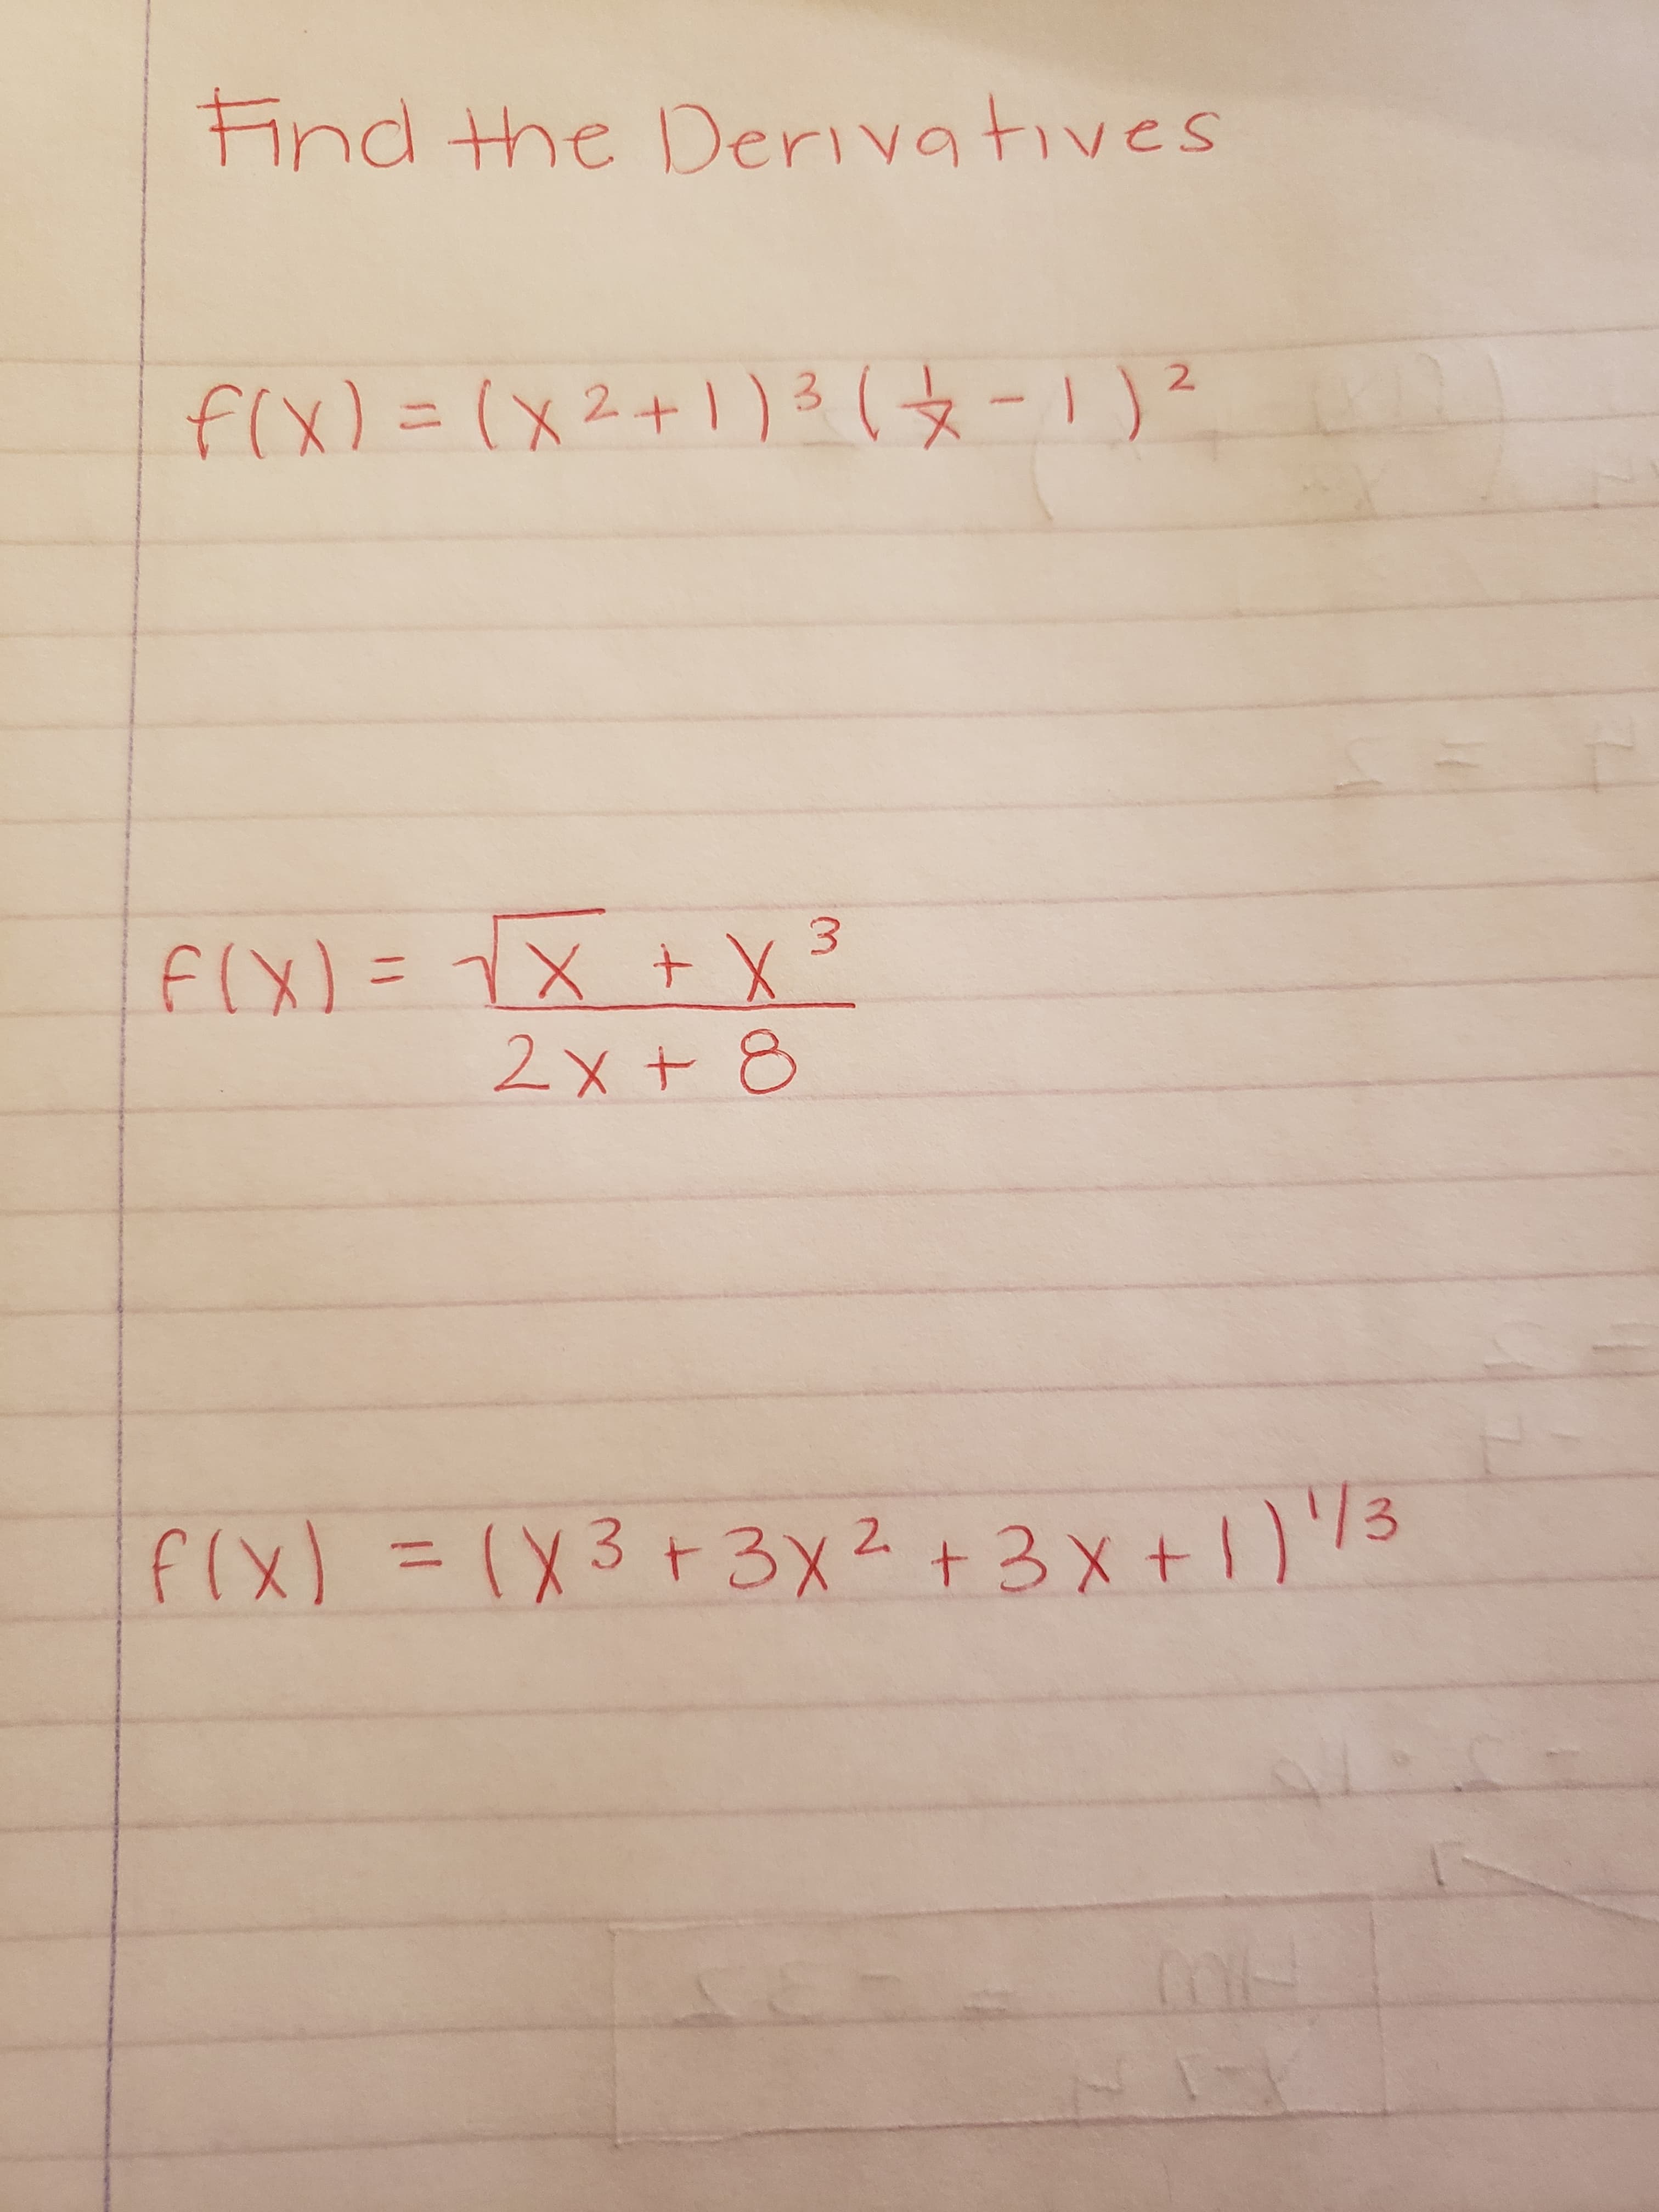 Hnd the Derivatives
fCX)= (X2+1 )3(12
F(X)=1X X3
2x+ 8
f(x) = (X3 +3x2)3
+3 xt
